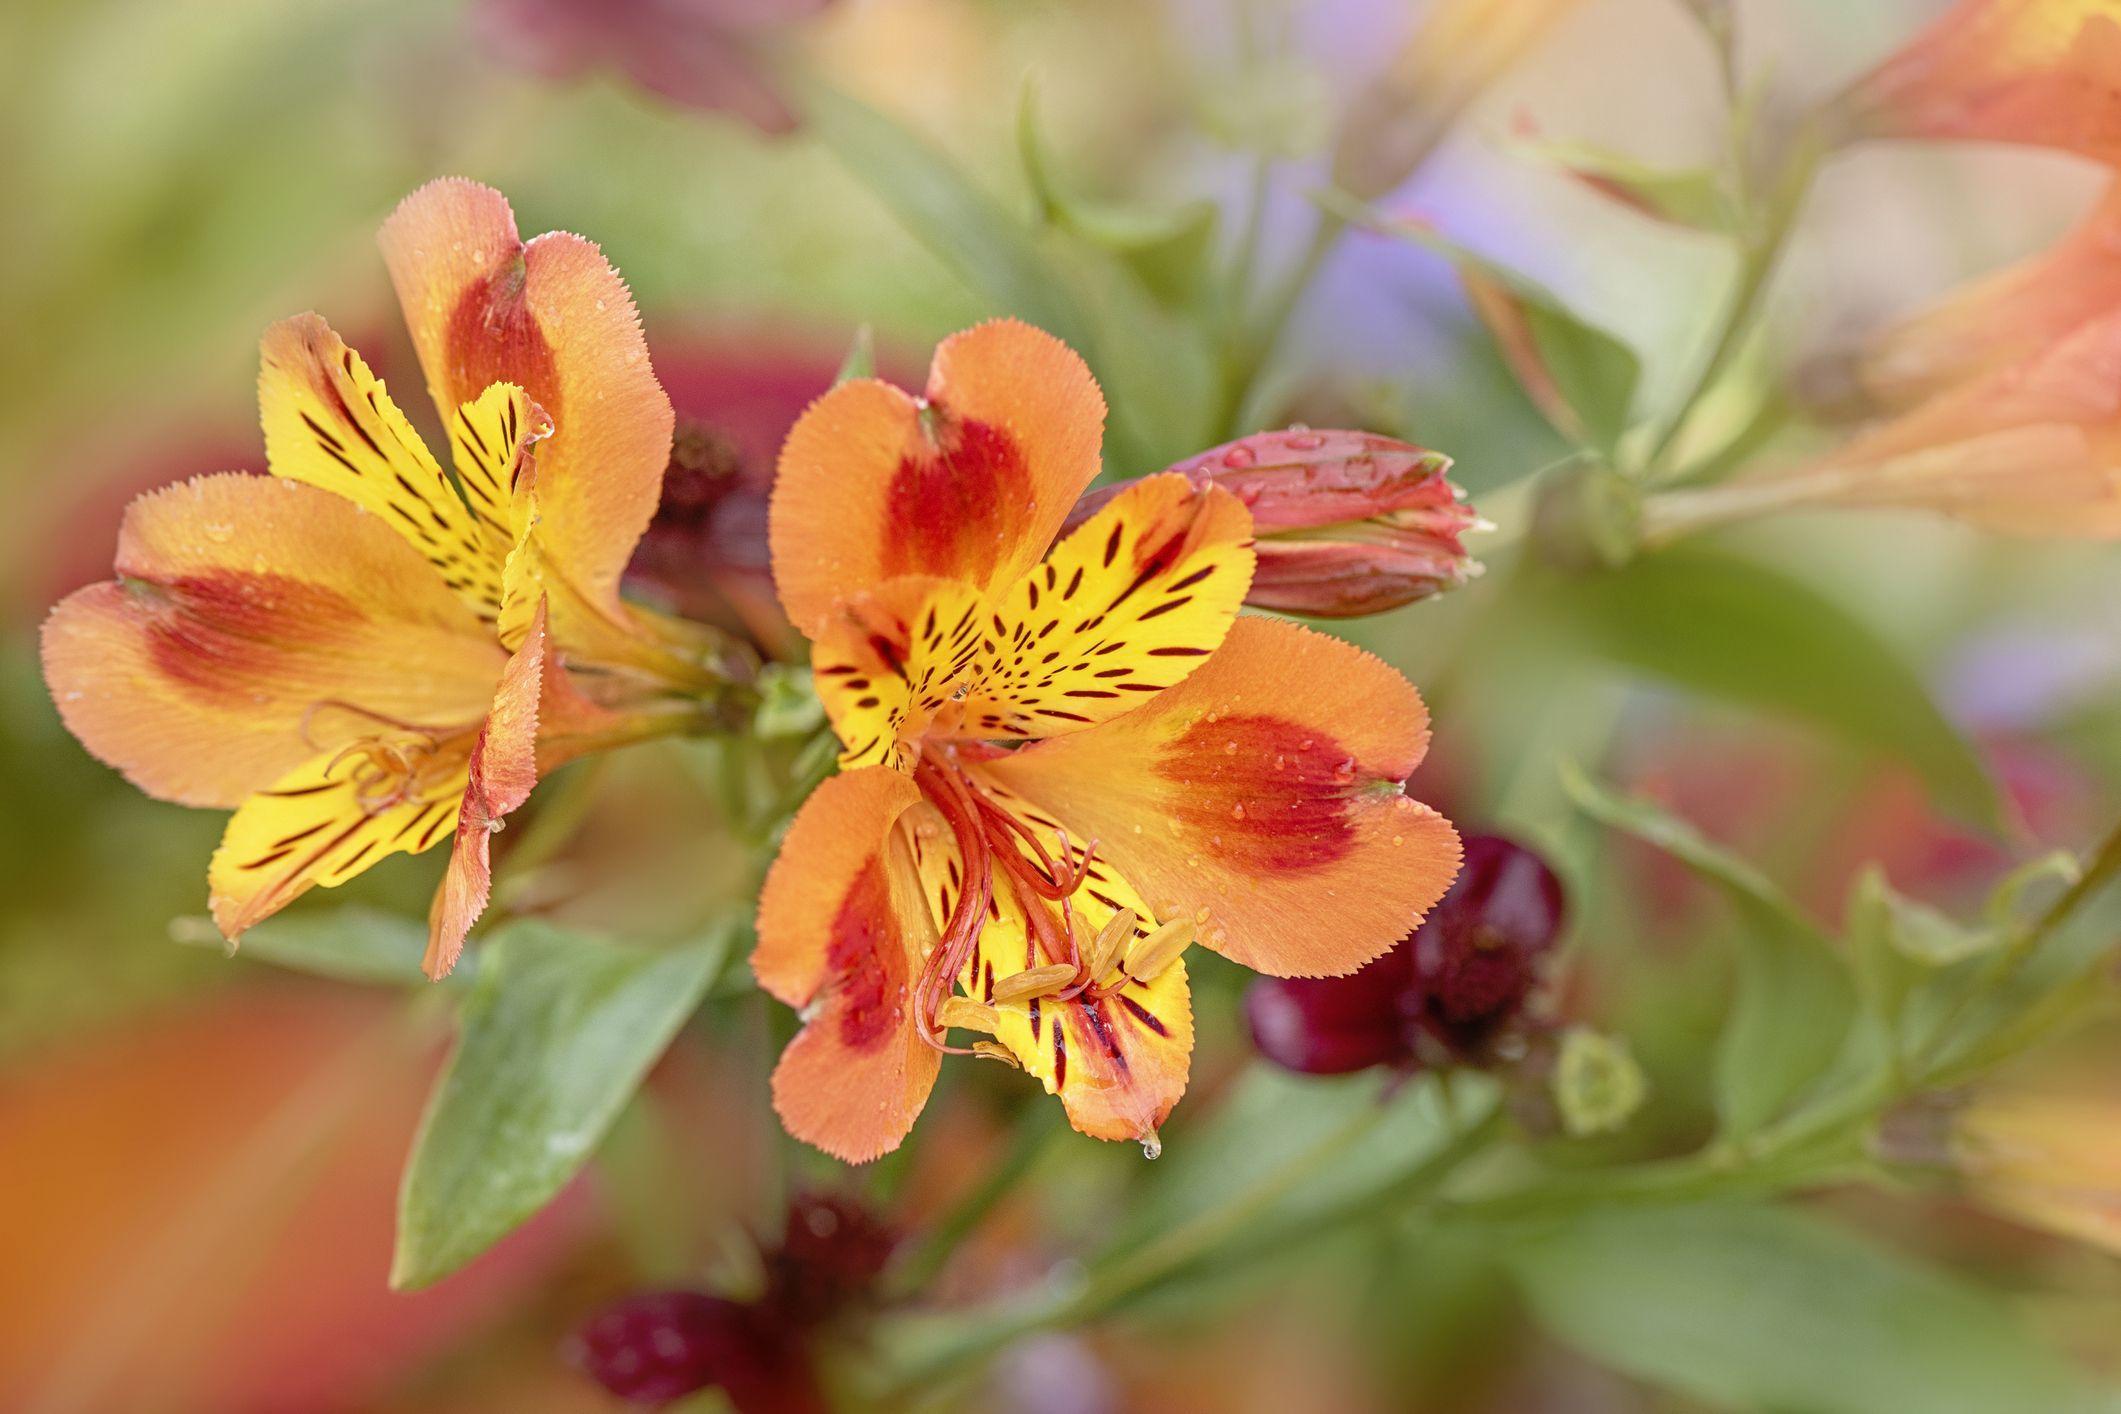 podoba čudovitih živih oranžnih cvetov alstroemerije, ki jih običajno imenujemo perujska lilija ali šmarnica incas